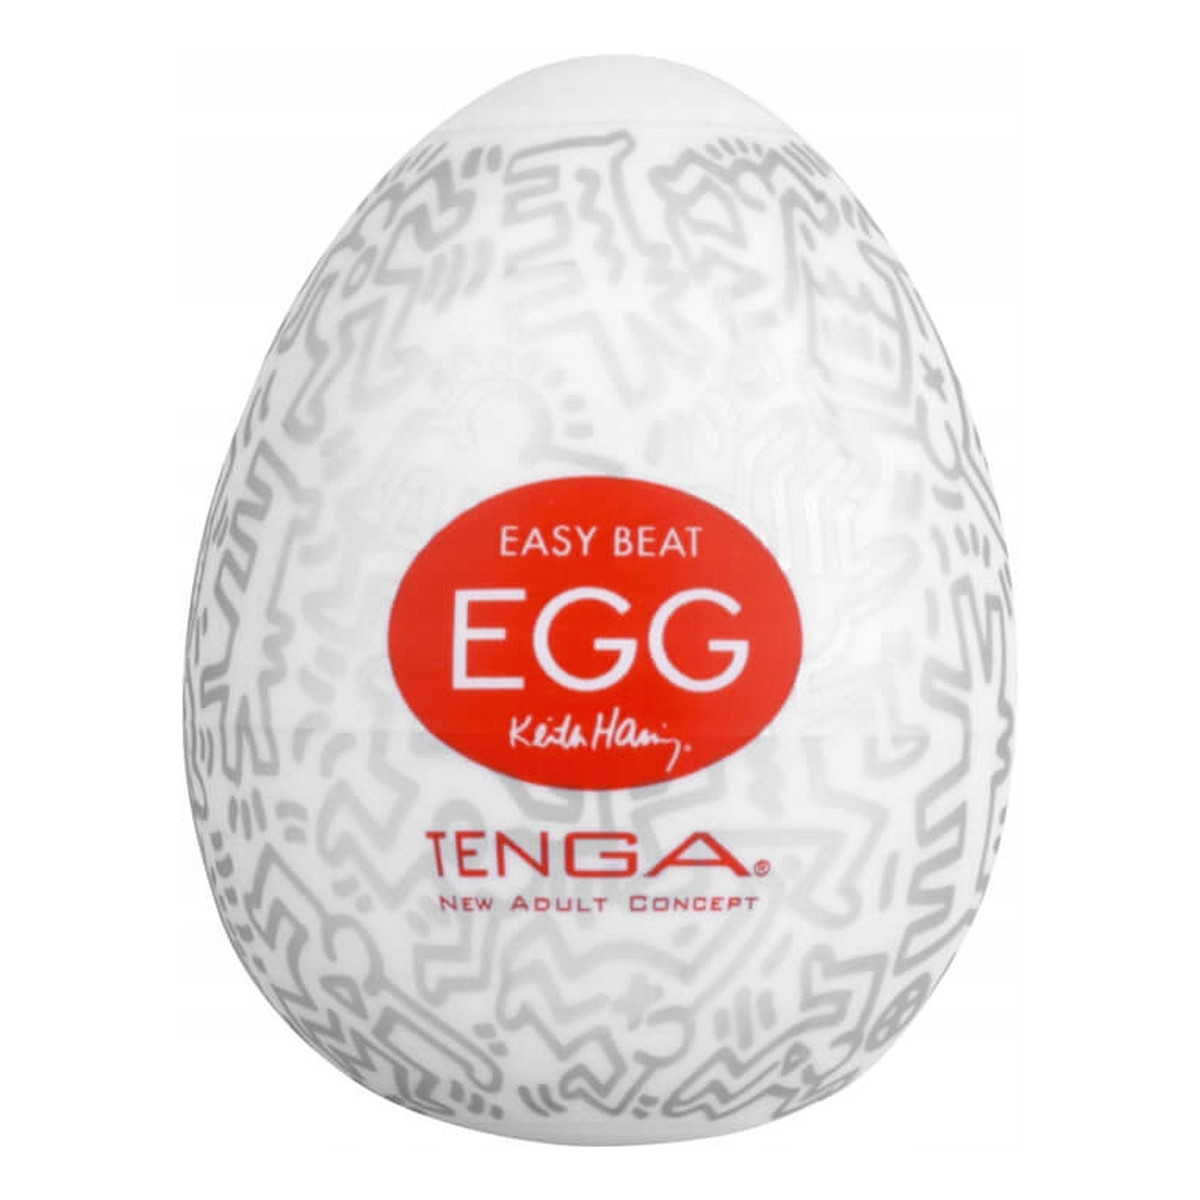 Tenga Easy beat egg keith haring party jednorazowy masturbator w kształcie jajka